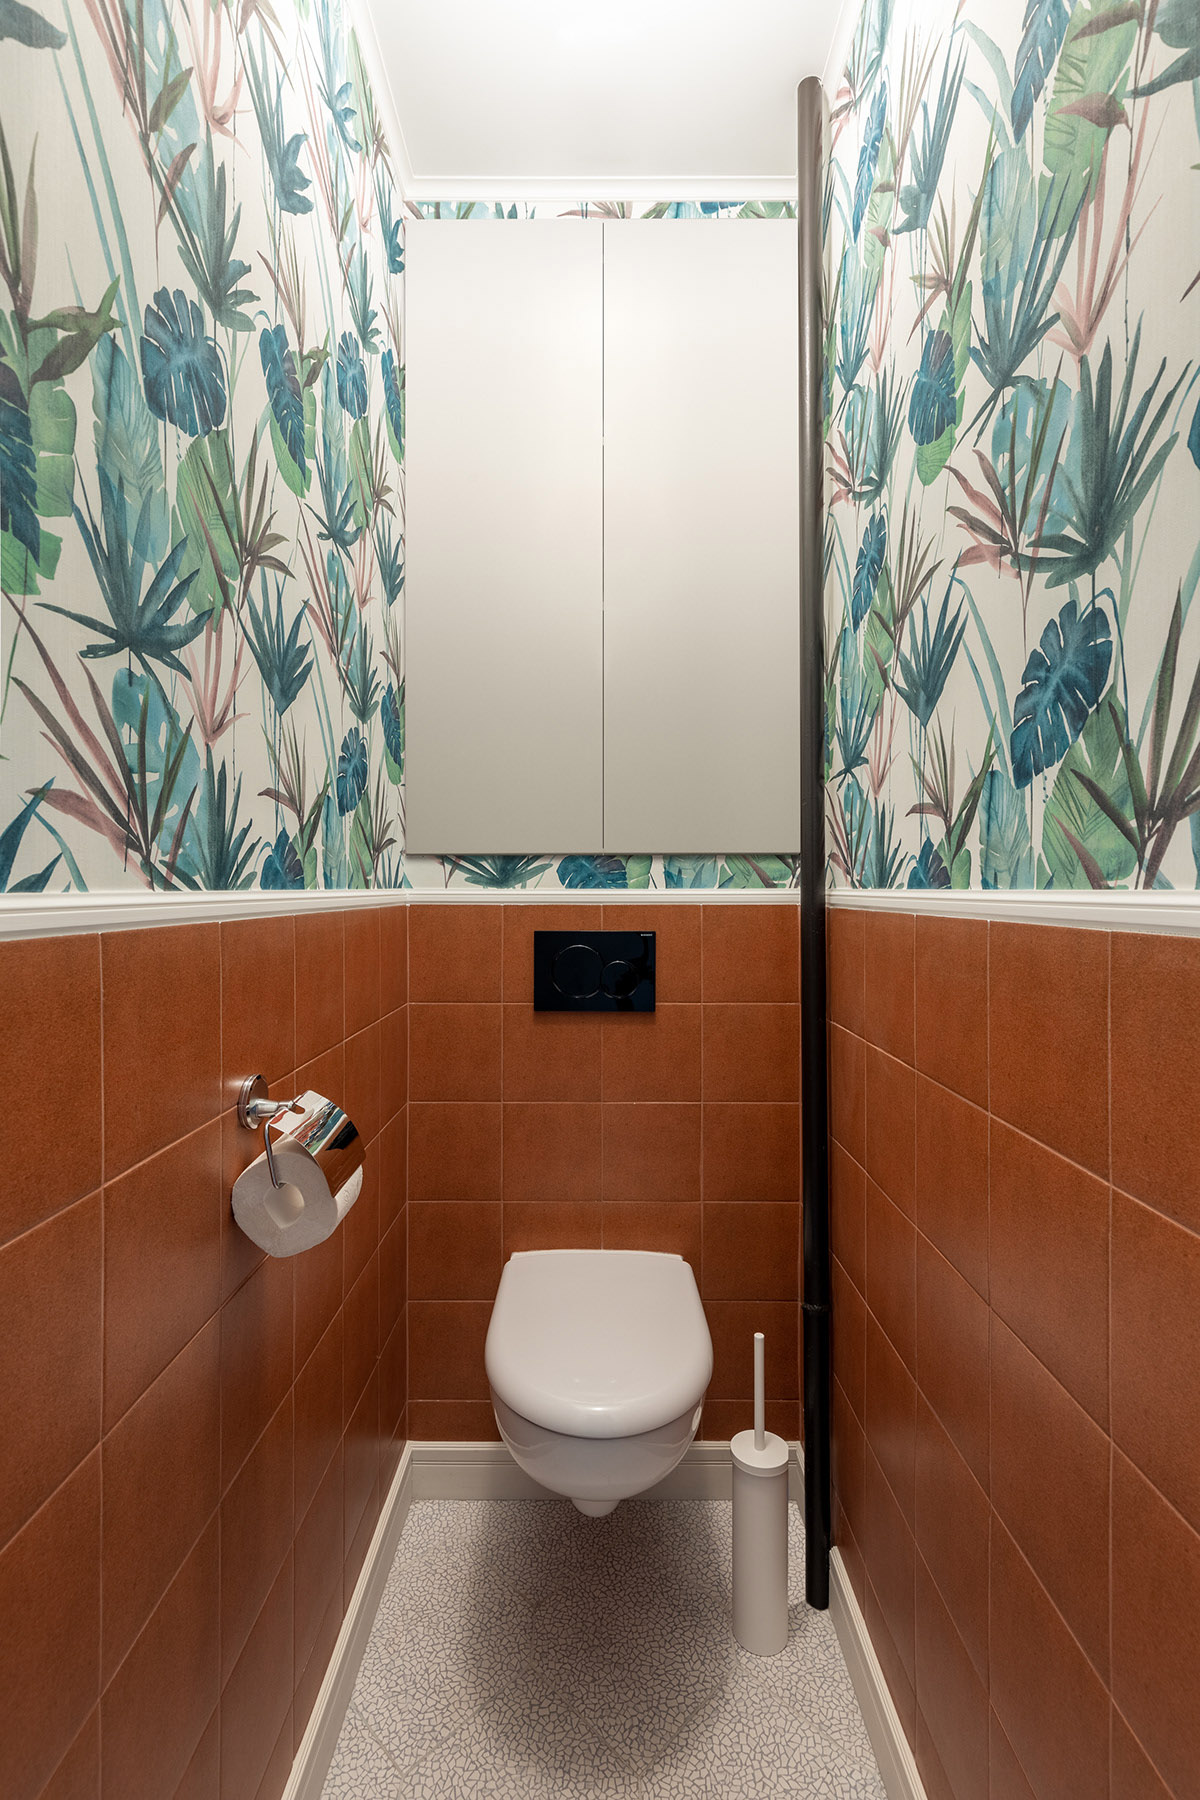 WC nhỏ xinh với gạch ốp tông màu đất thân thiện, phần tường phía trên trang trí giấy dán tường họa tiết nhiệt đới xanh mát.